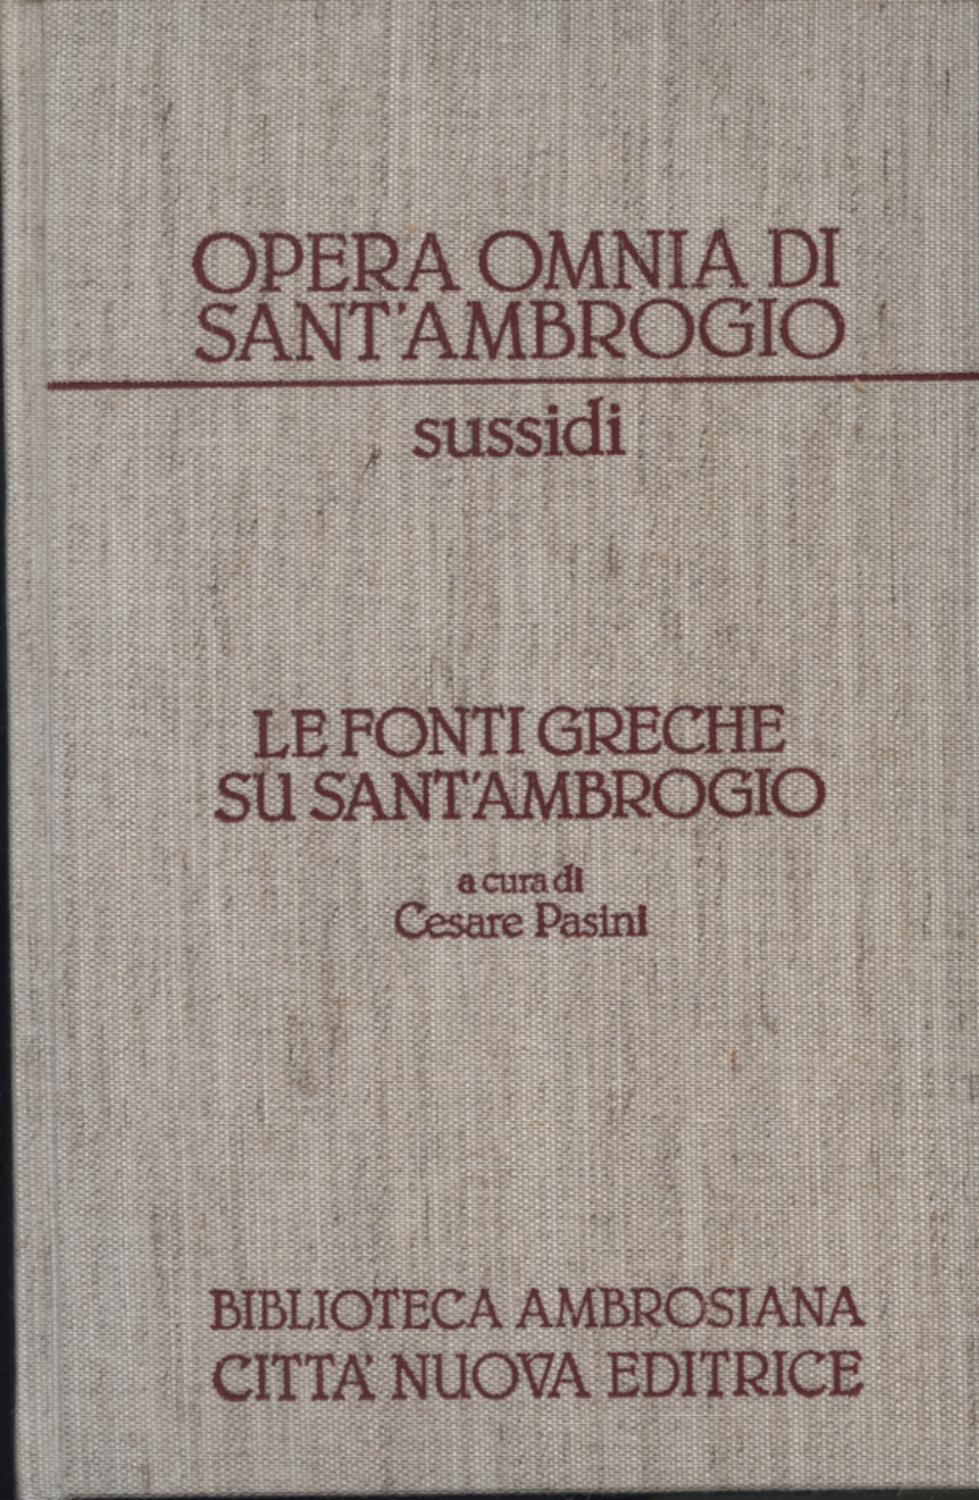 Le fonti greche su Sant'Ambrogio - Cesare Pasini